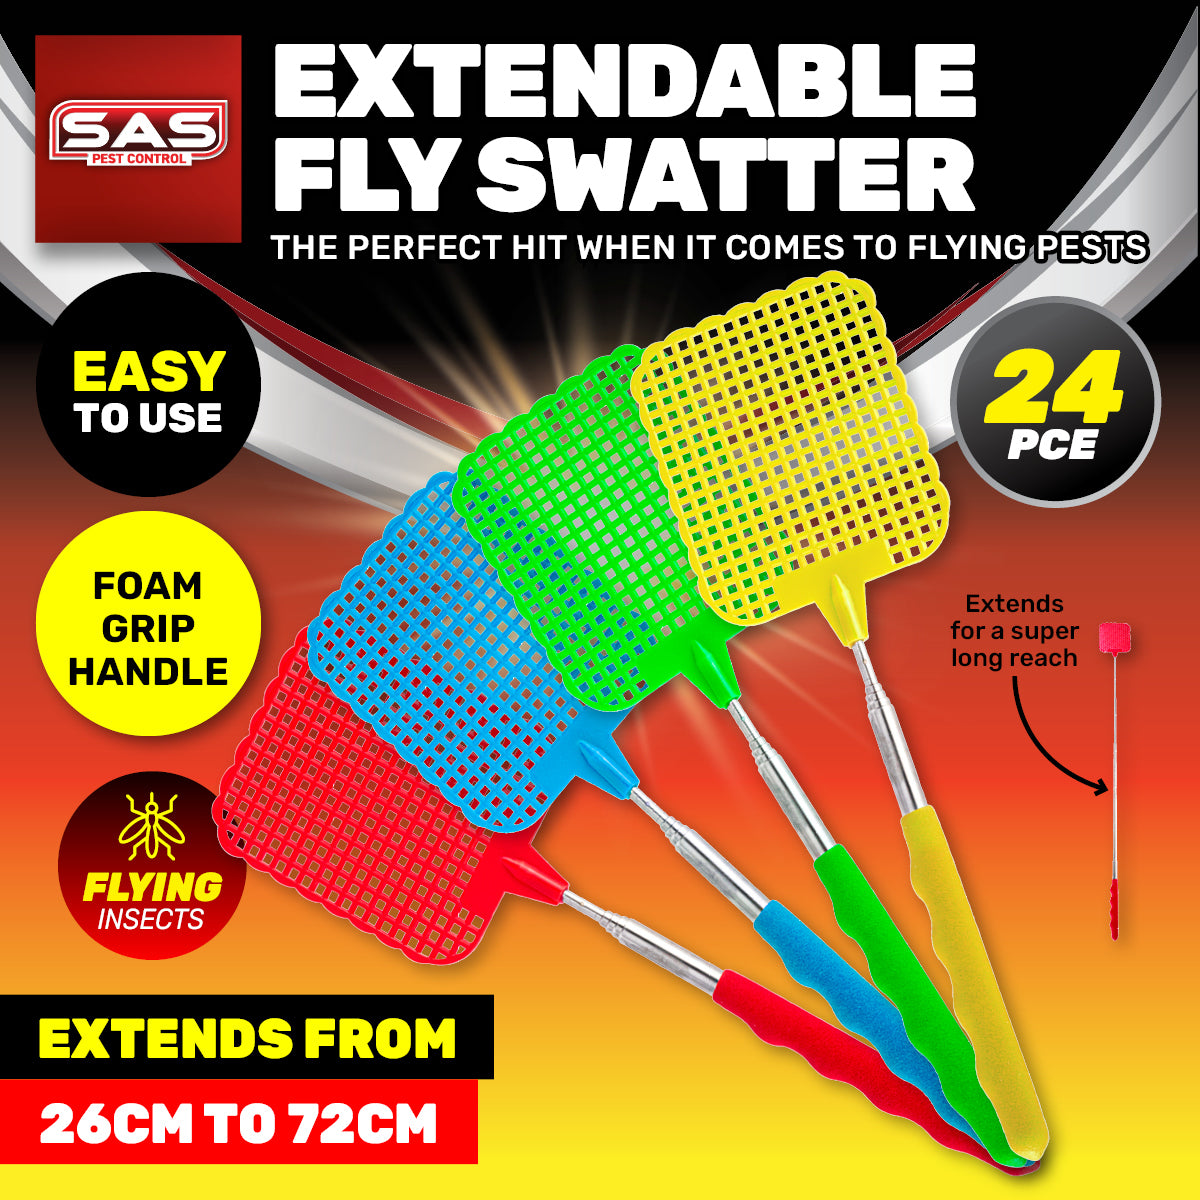 SAS Pest Control 24PCE Fly Swatter Extendable Handle Flexible Durable 26-72cm